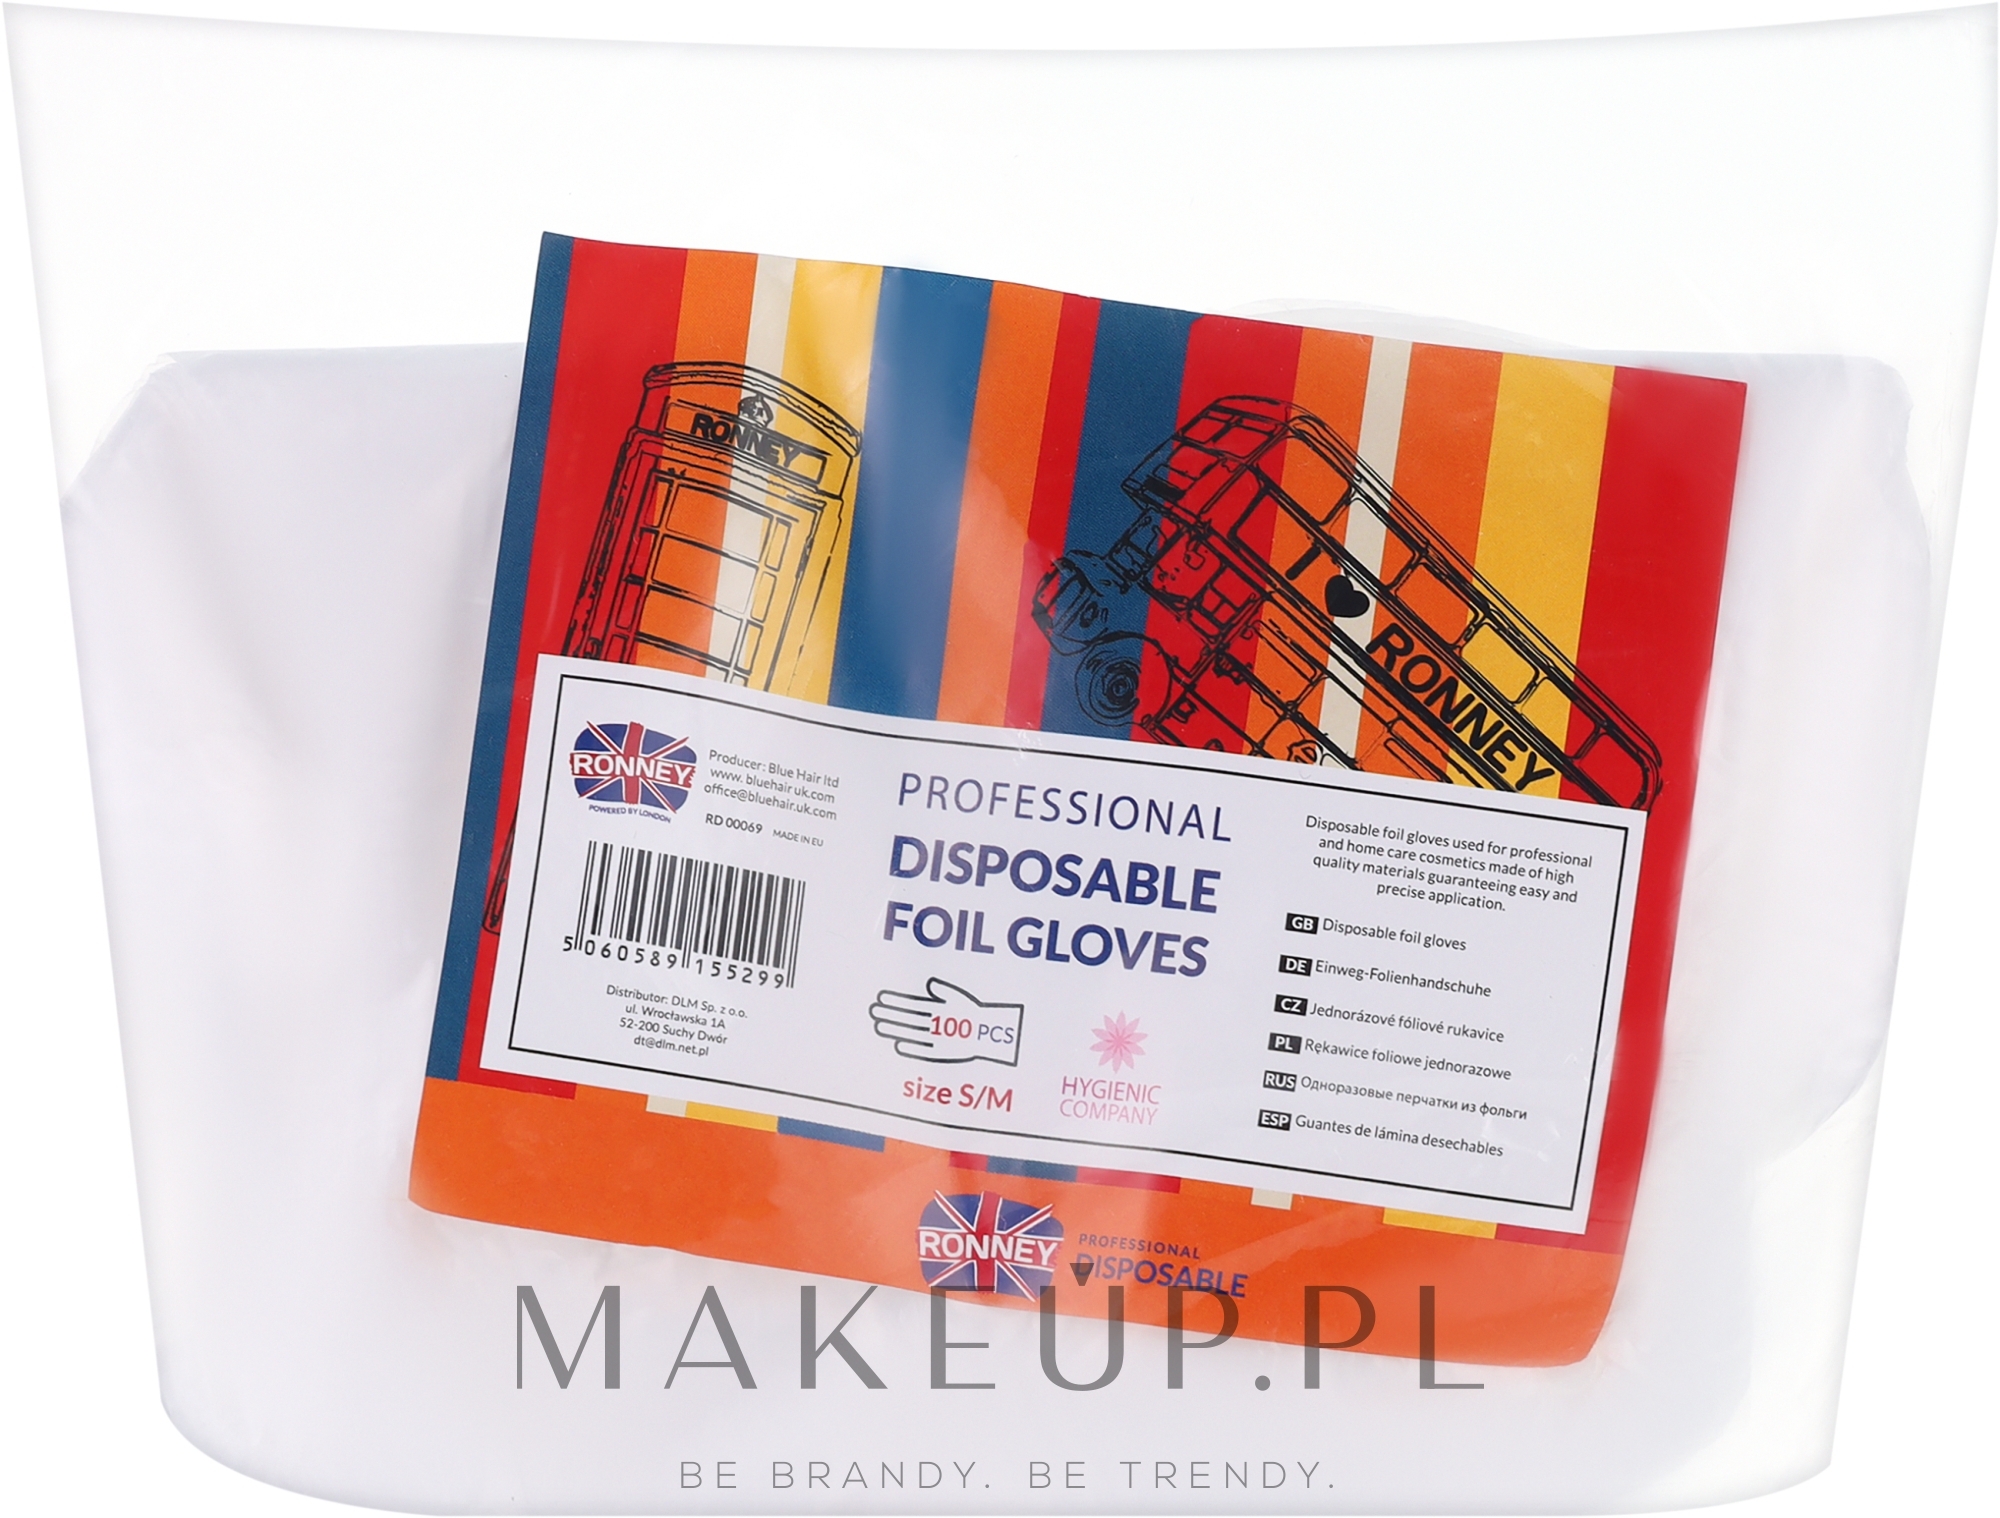 Rękawiczki jednorazowe przezroczyste, rozmiar S/M, 100 szt. - Ronney Professional Disposable Foil Gloves — Zdjęcie 100 szt.